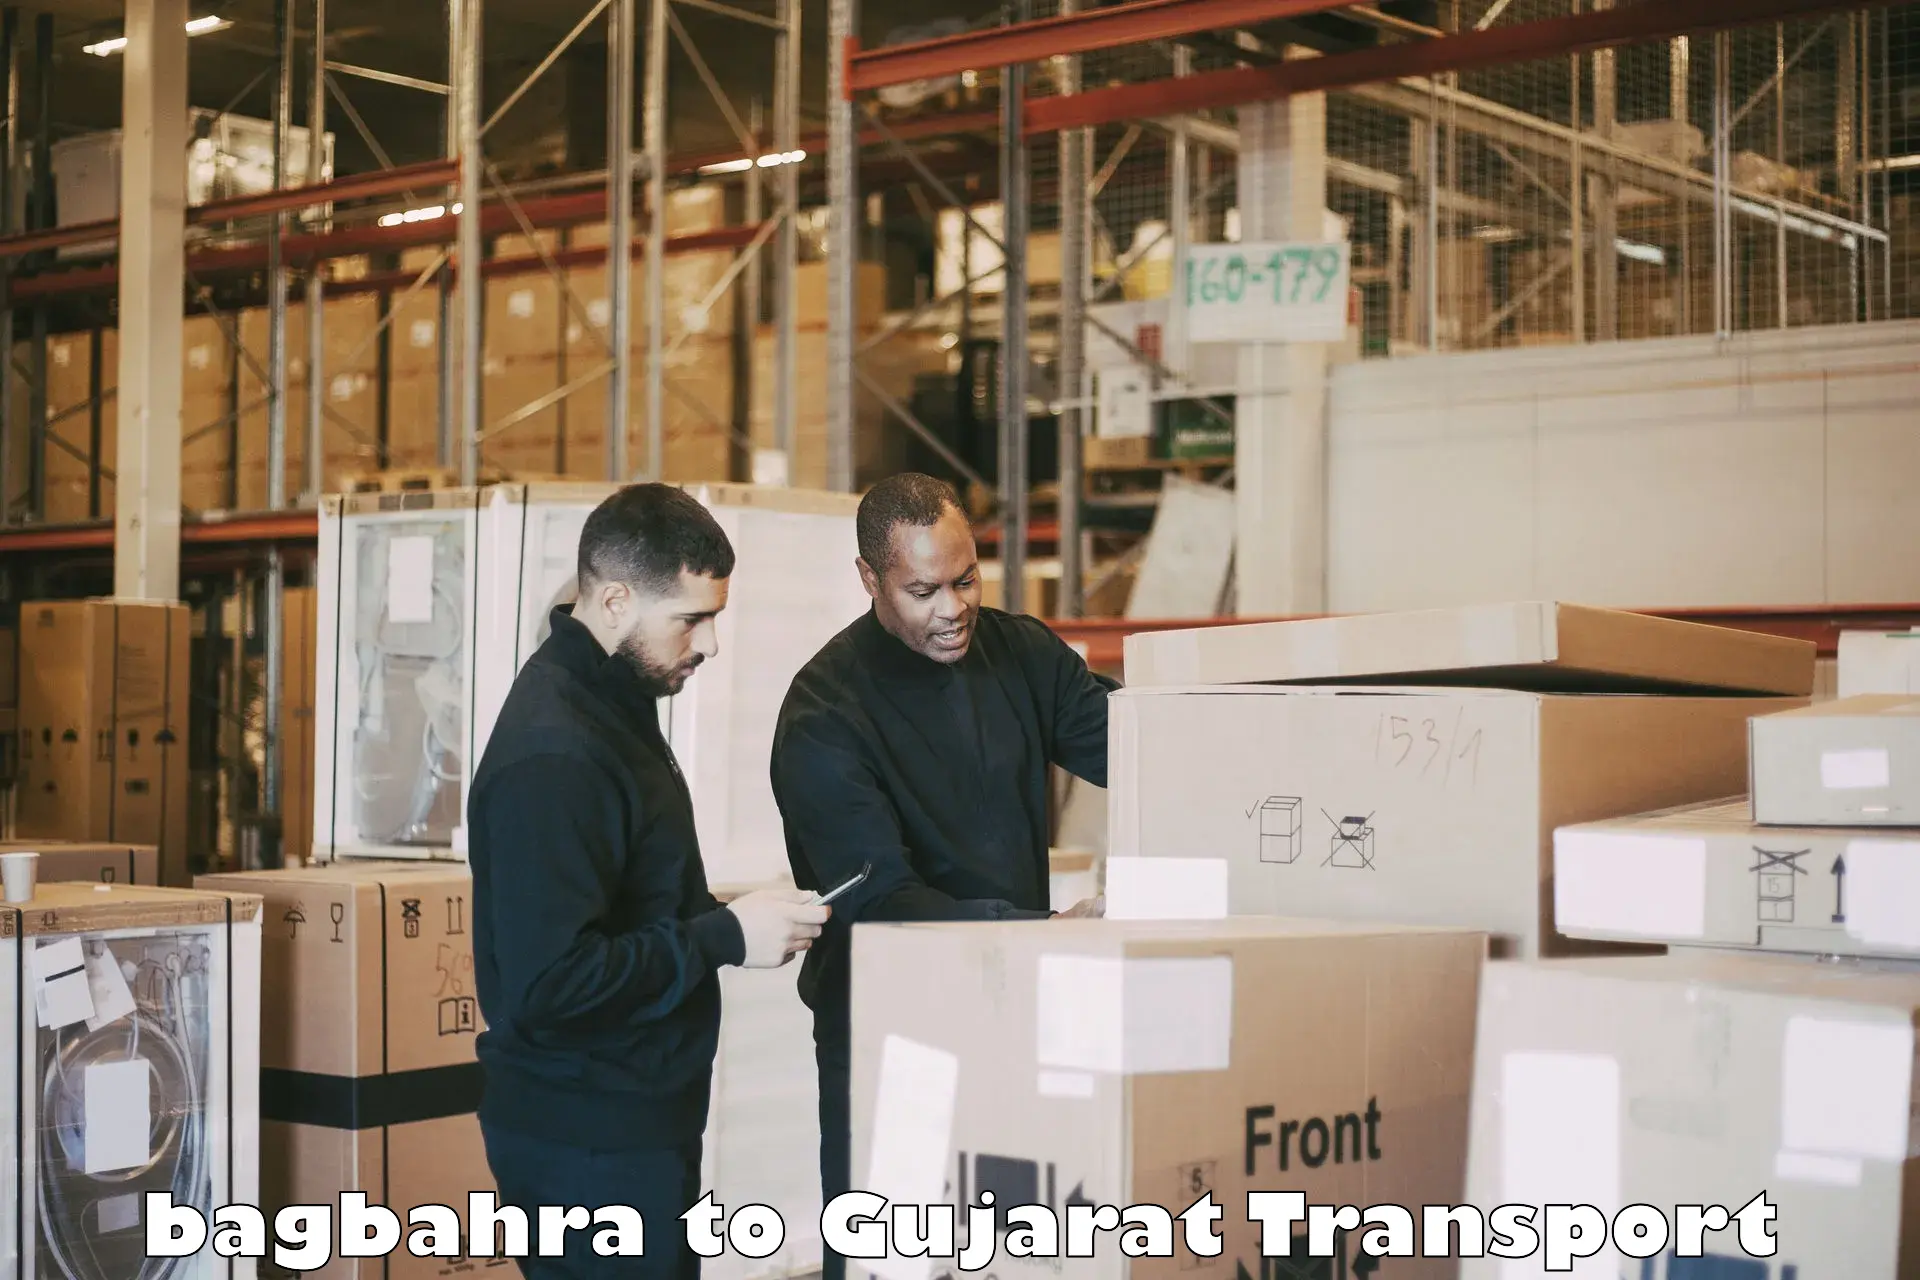 Furniture transport service bagbahra to Naliya